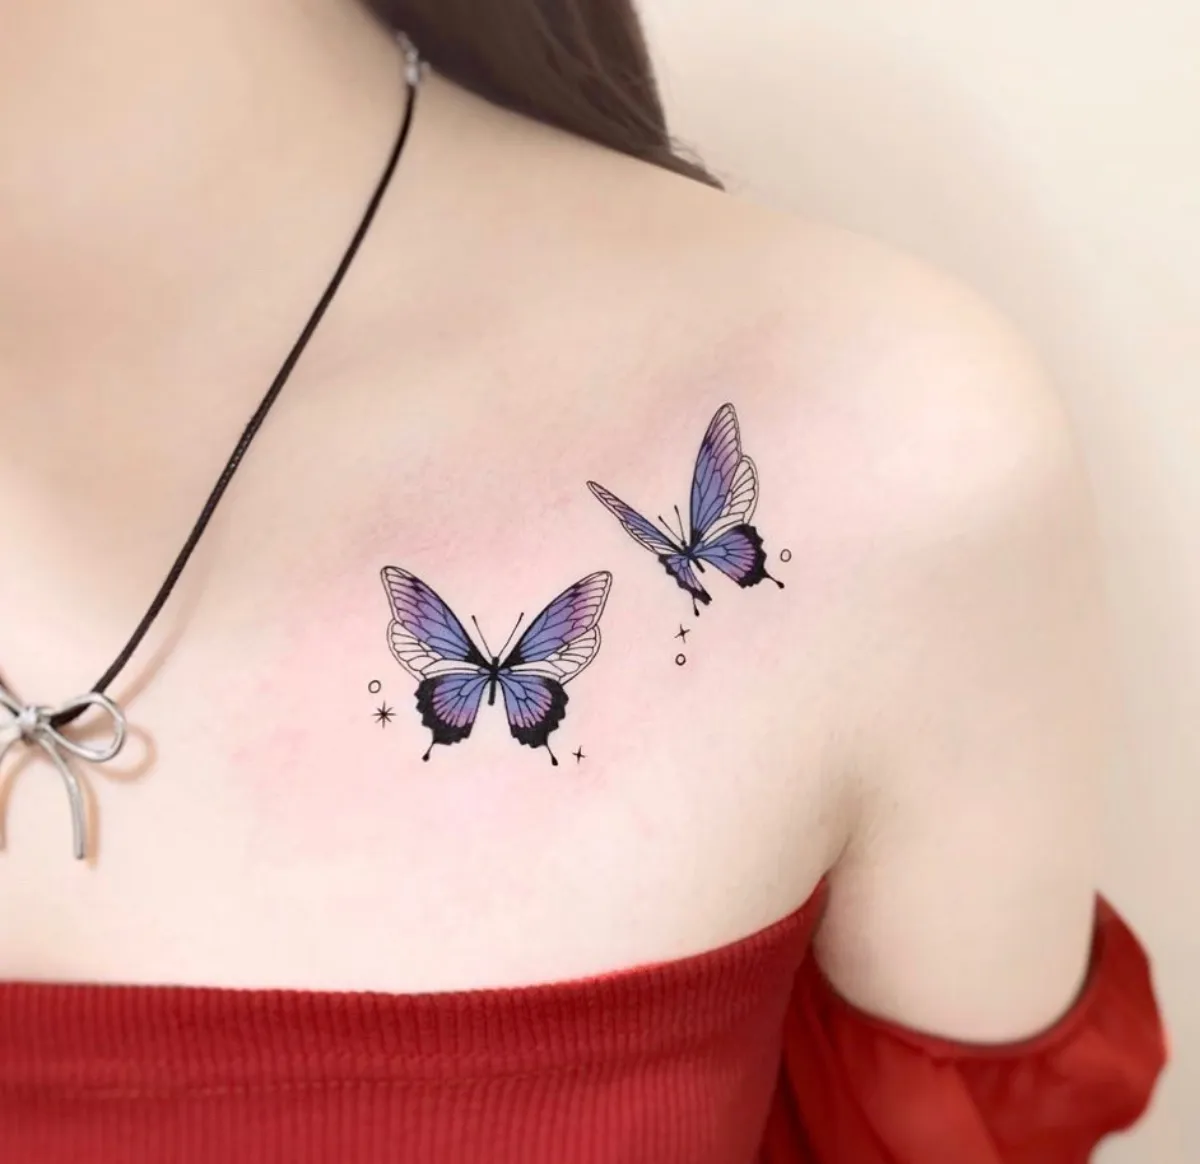 brust tattoo zwei blaue schmetterlinge fliegend